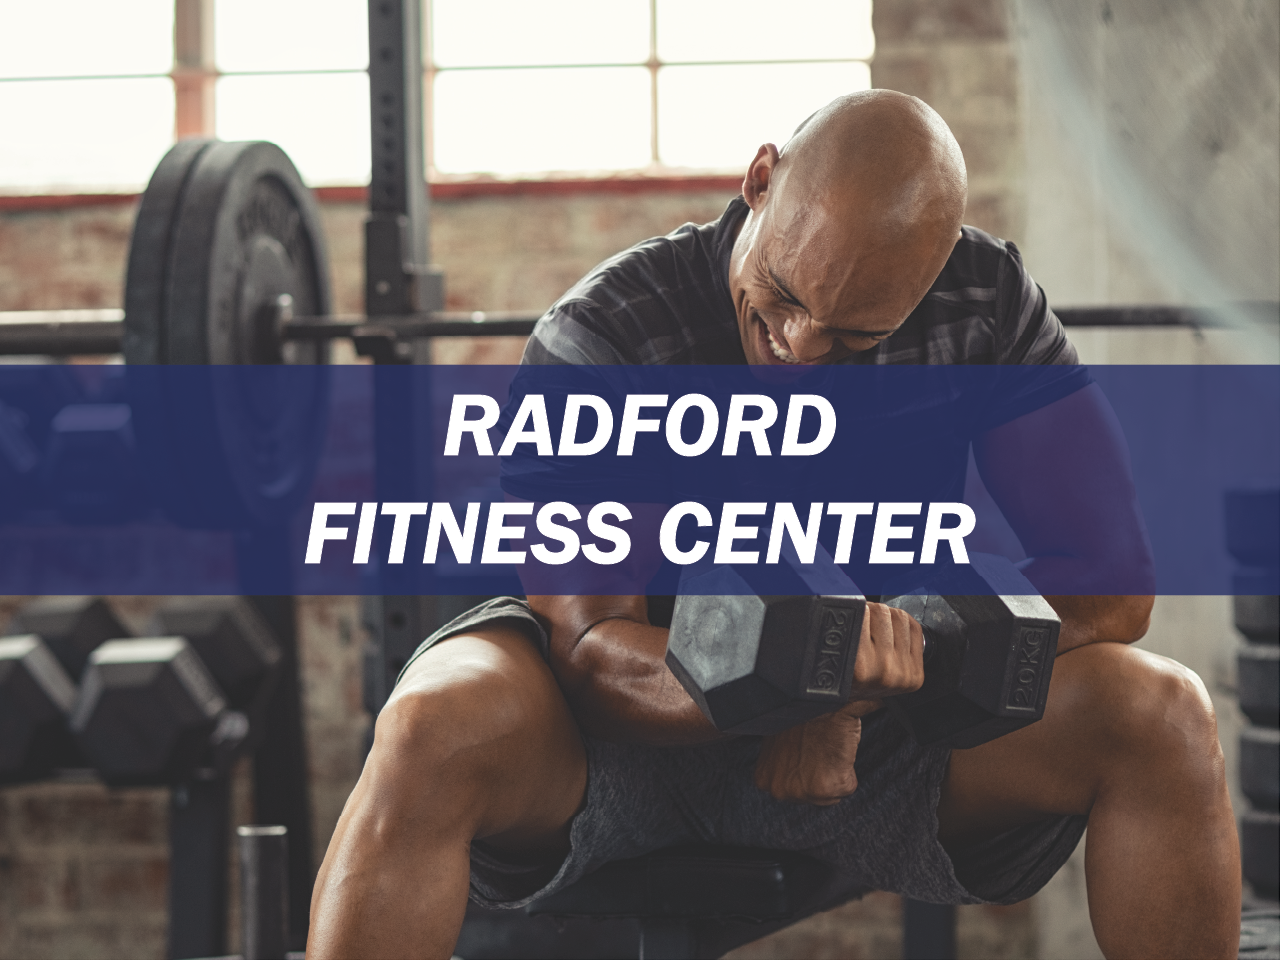 Radford Fitness Center Survey